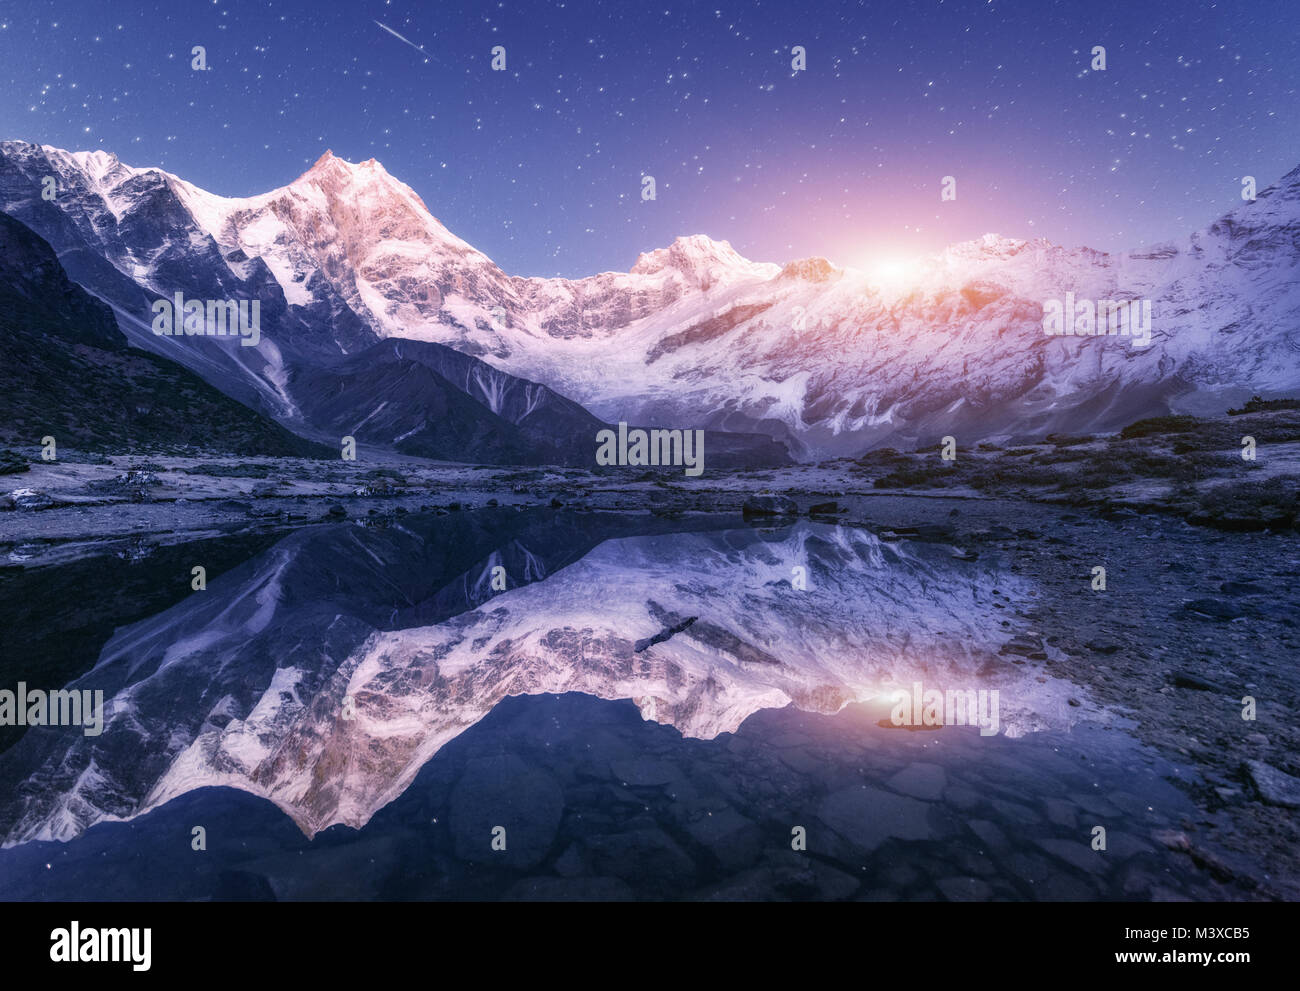 Scena notturna con himalayan montagne e lago di montagna alla notte stellata in Nepal. Paesaggio con alte rocce a picco innevato e il cielo con le stelle e la luna Foto Stock